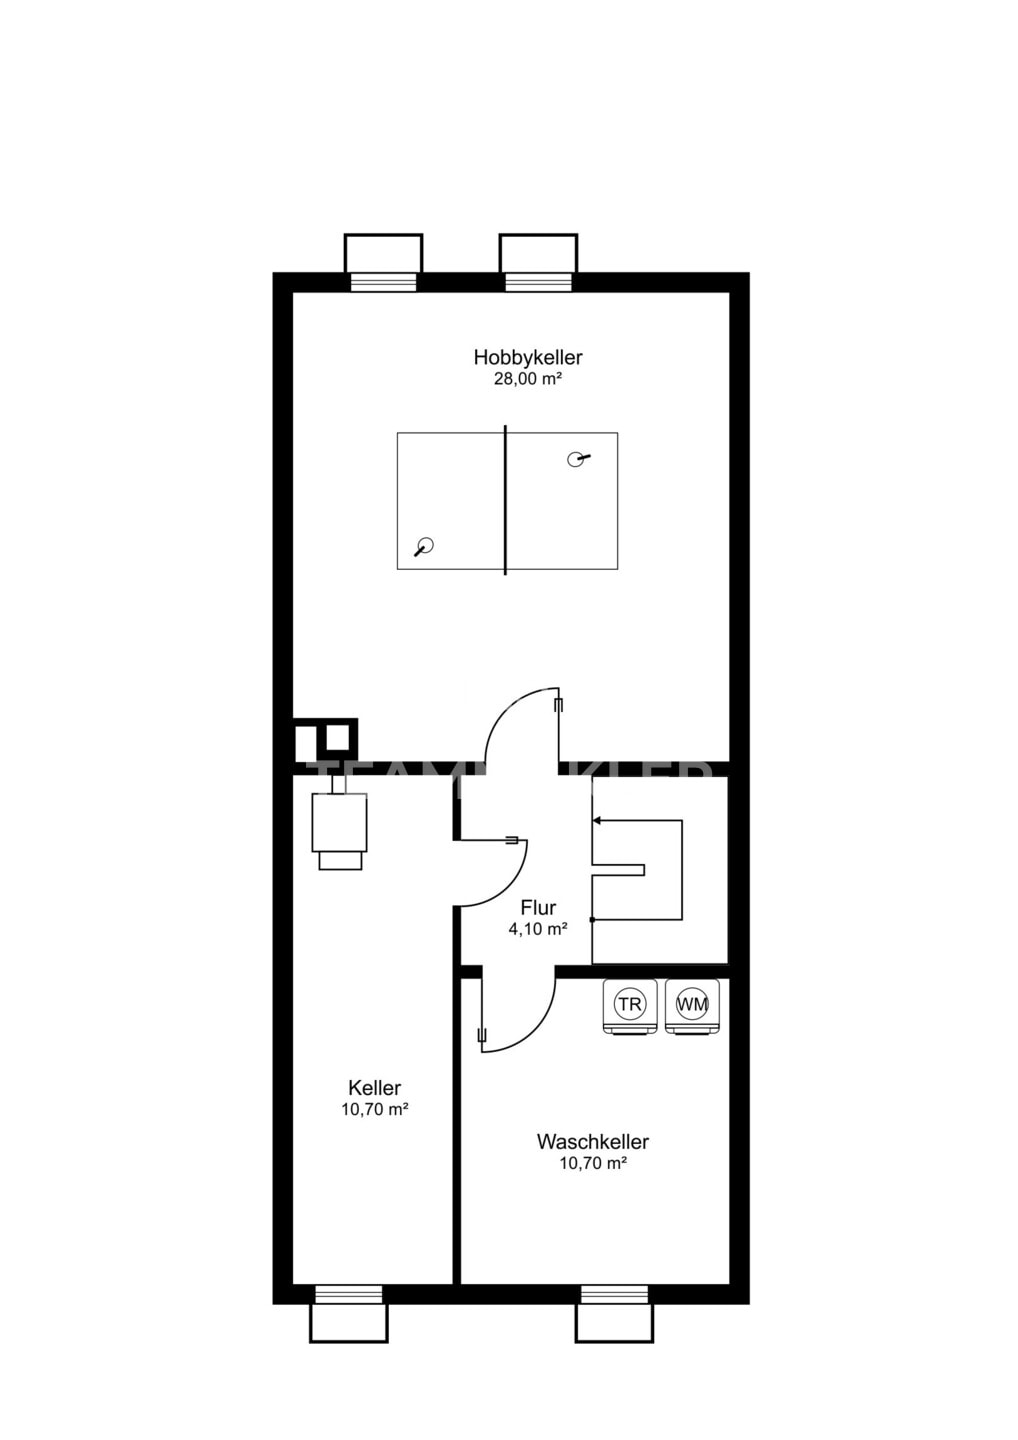 Ein Grundriss einer Zweizimmerwohnung in einem Endreihenhaus mit Keller.